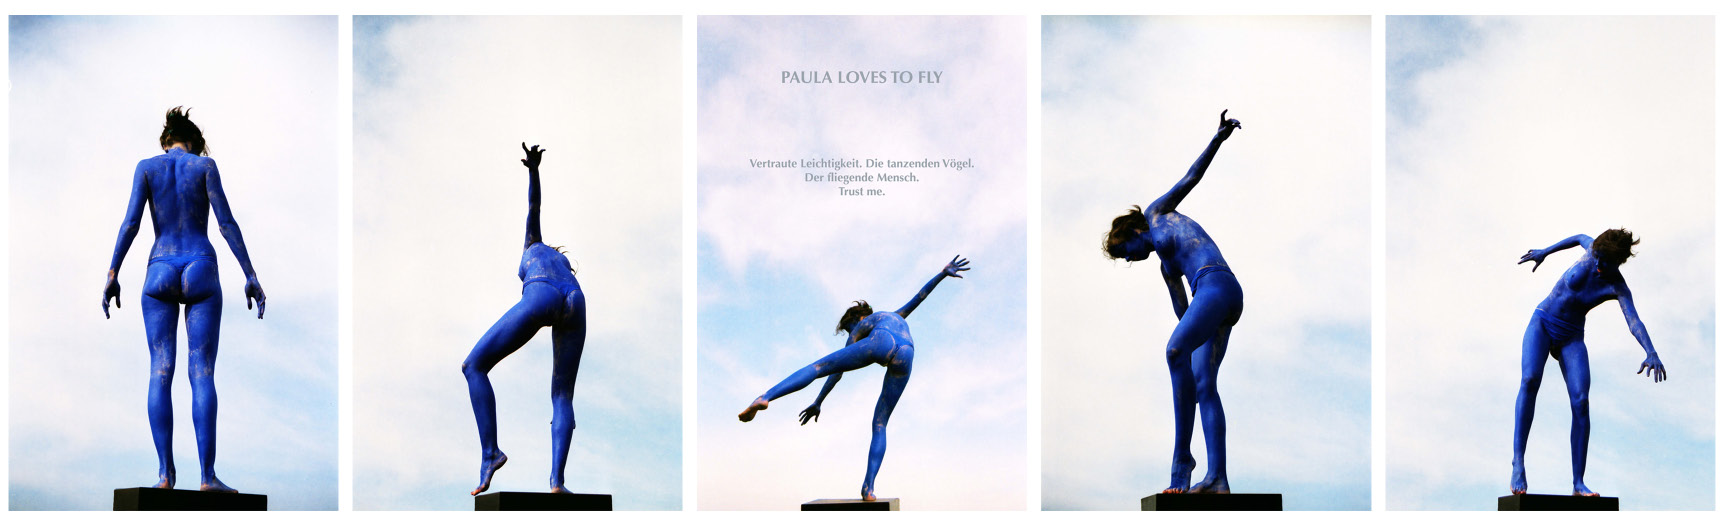 Paula loves to fly